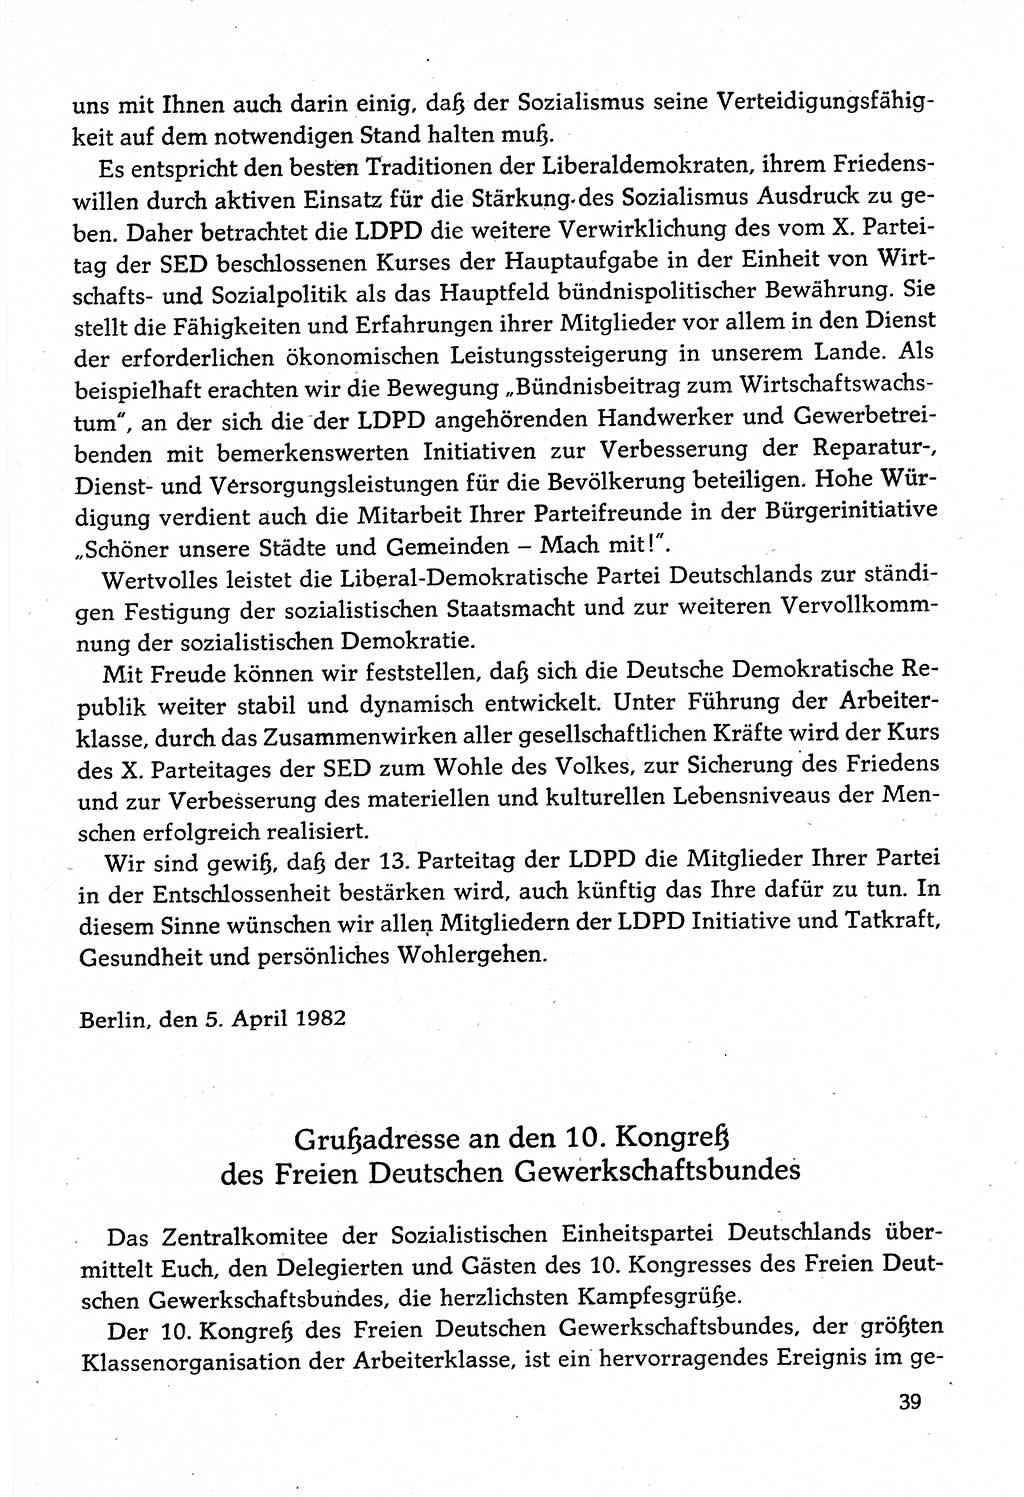 Dokumente der Sozialistischen Einheitspartei Deutschlands (SED) [Deutsche Demokratische Republik (DDR)] 1982-1983, Seite 39 (Dok. SED DDR 1982-1983, S. 39)